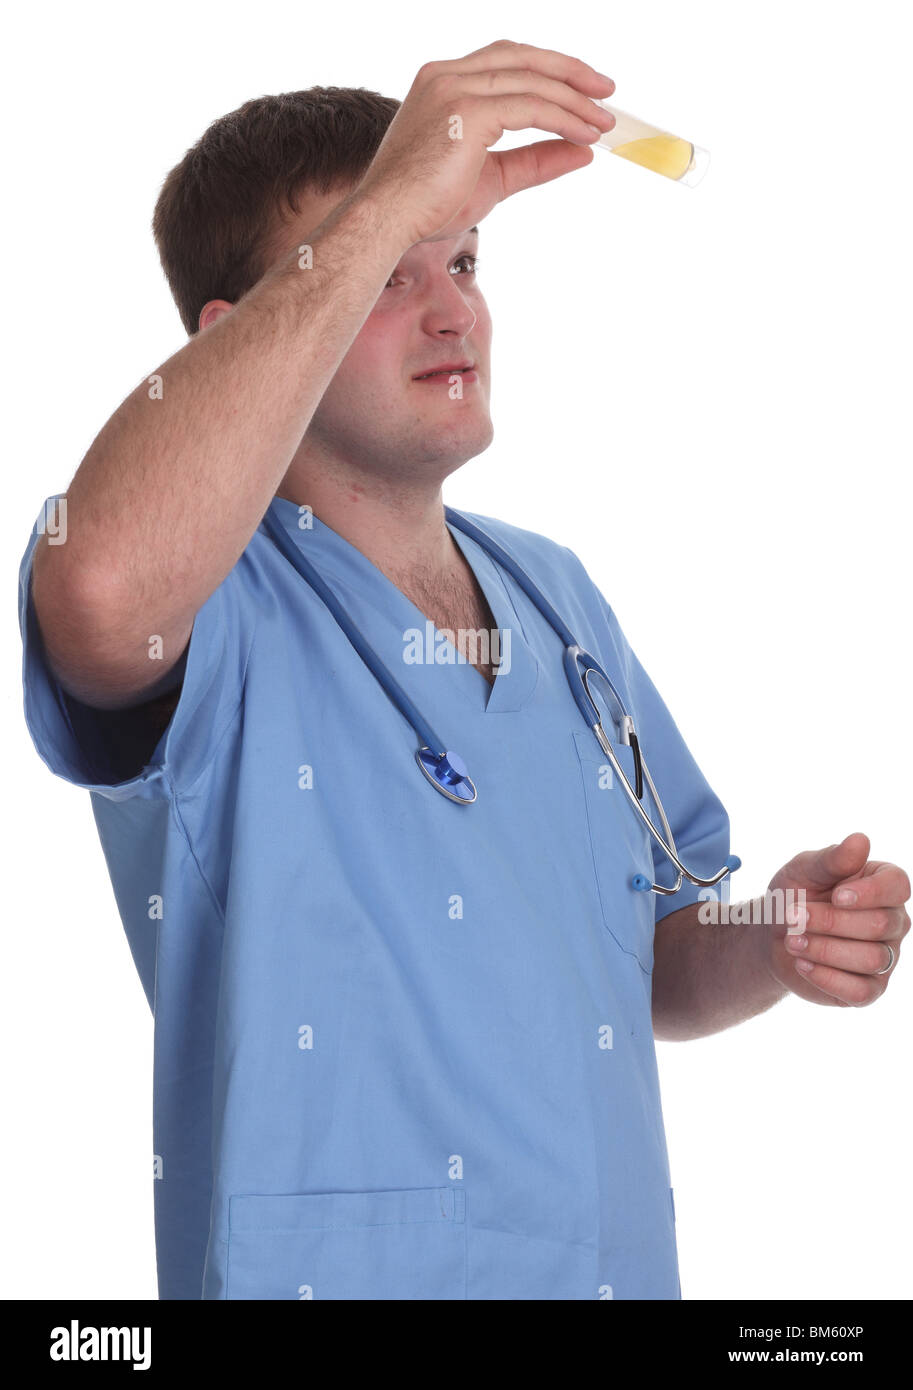 Mai 2010 - junges männliches Modell in medizinischen Schruben als männliche Krankenschwester, Stockfoto